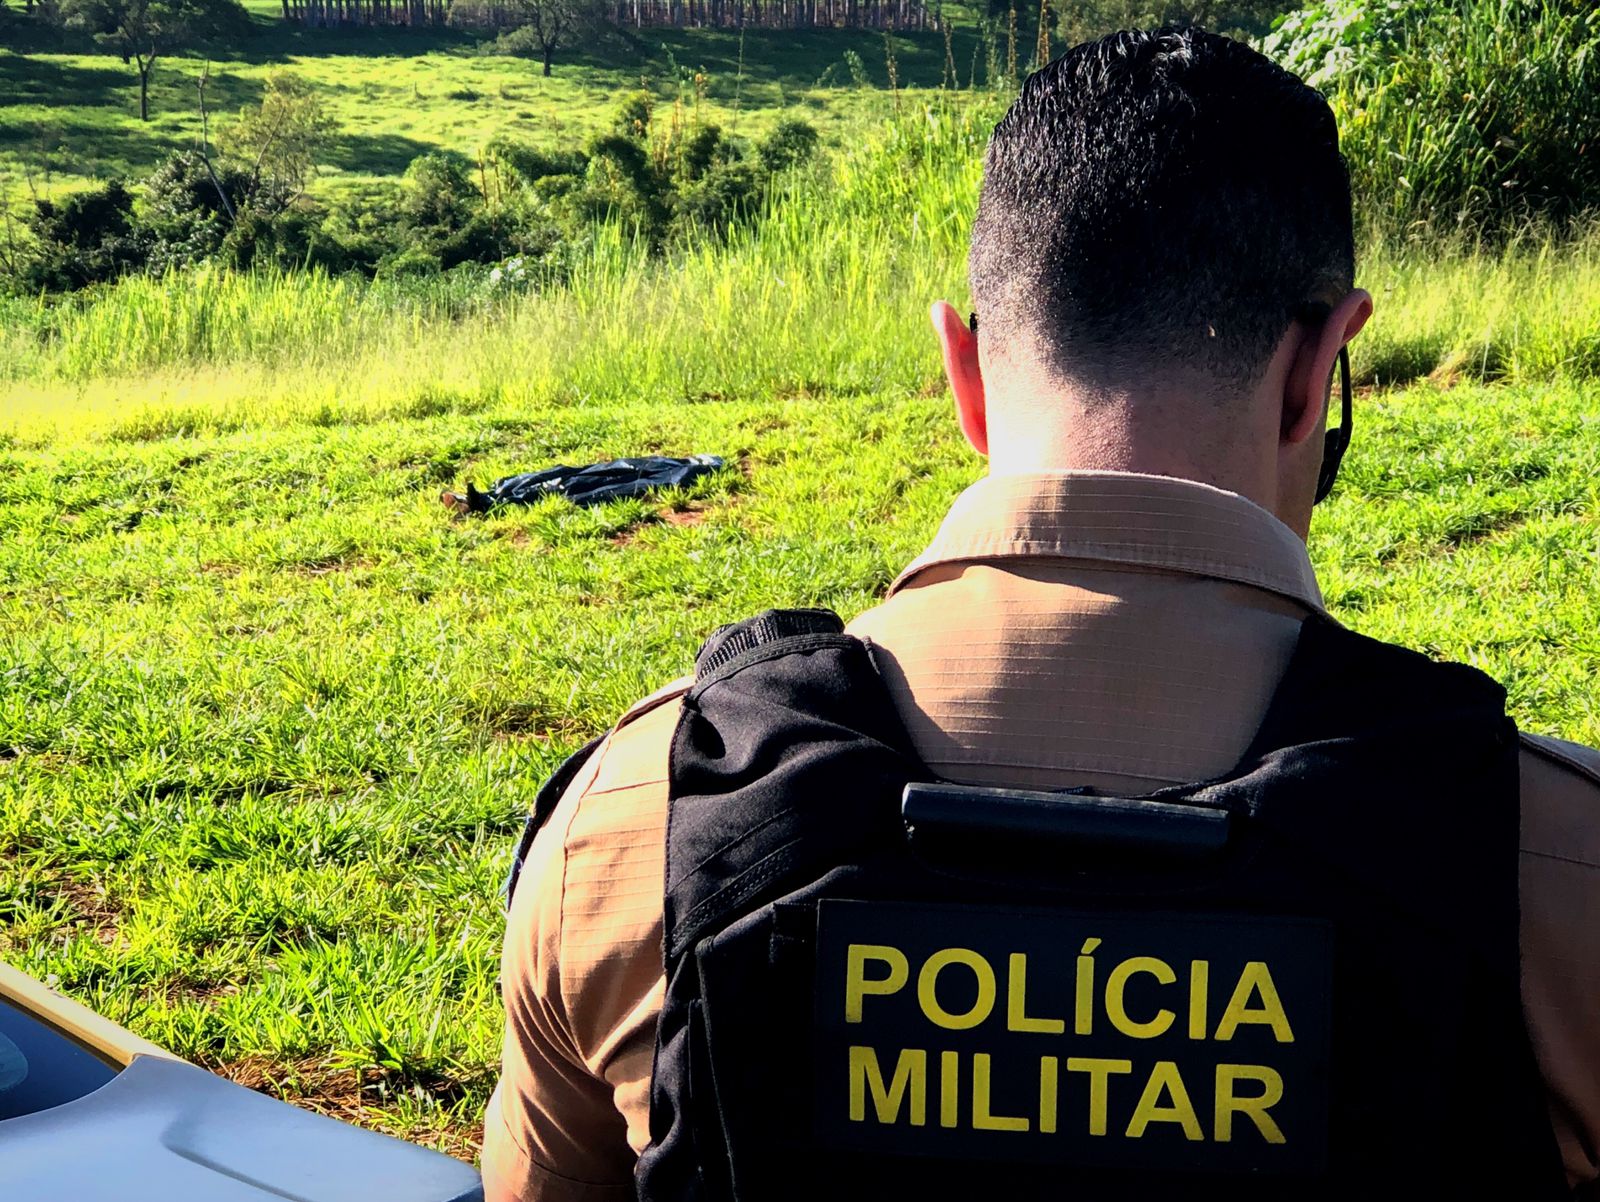 Jornal Ilustrado - Rapaz encontrado morto em Umuarama levou mais de 10 facadas